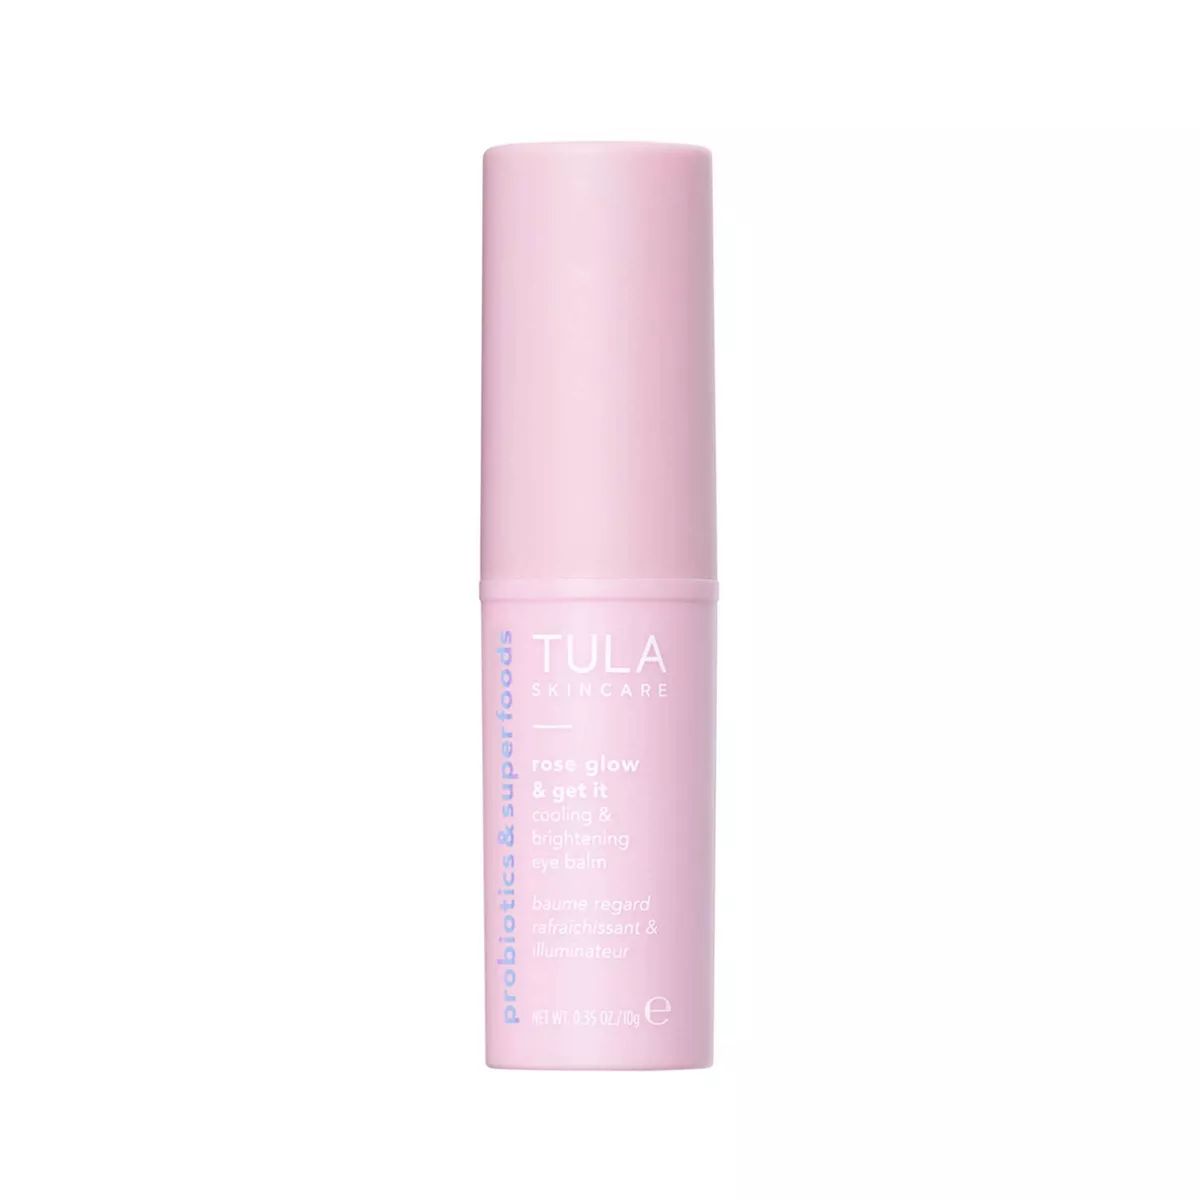 TULA SKINCARE Rose Glow & Get It Cooling & Brightening Eye Balm - 0.35oz - Ulta Beauty | Target